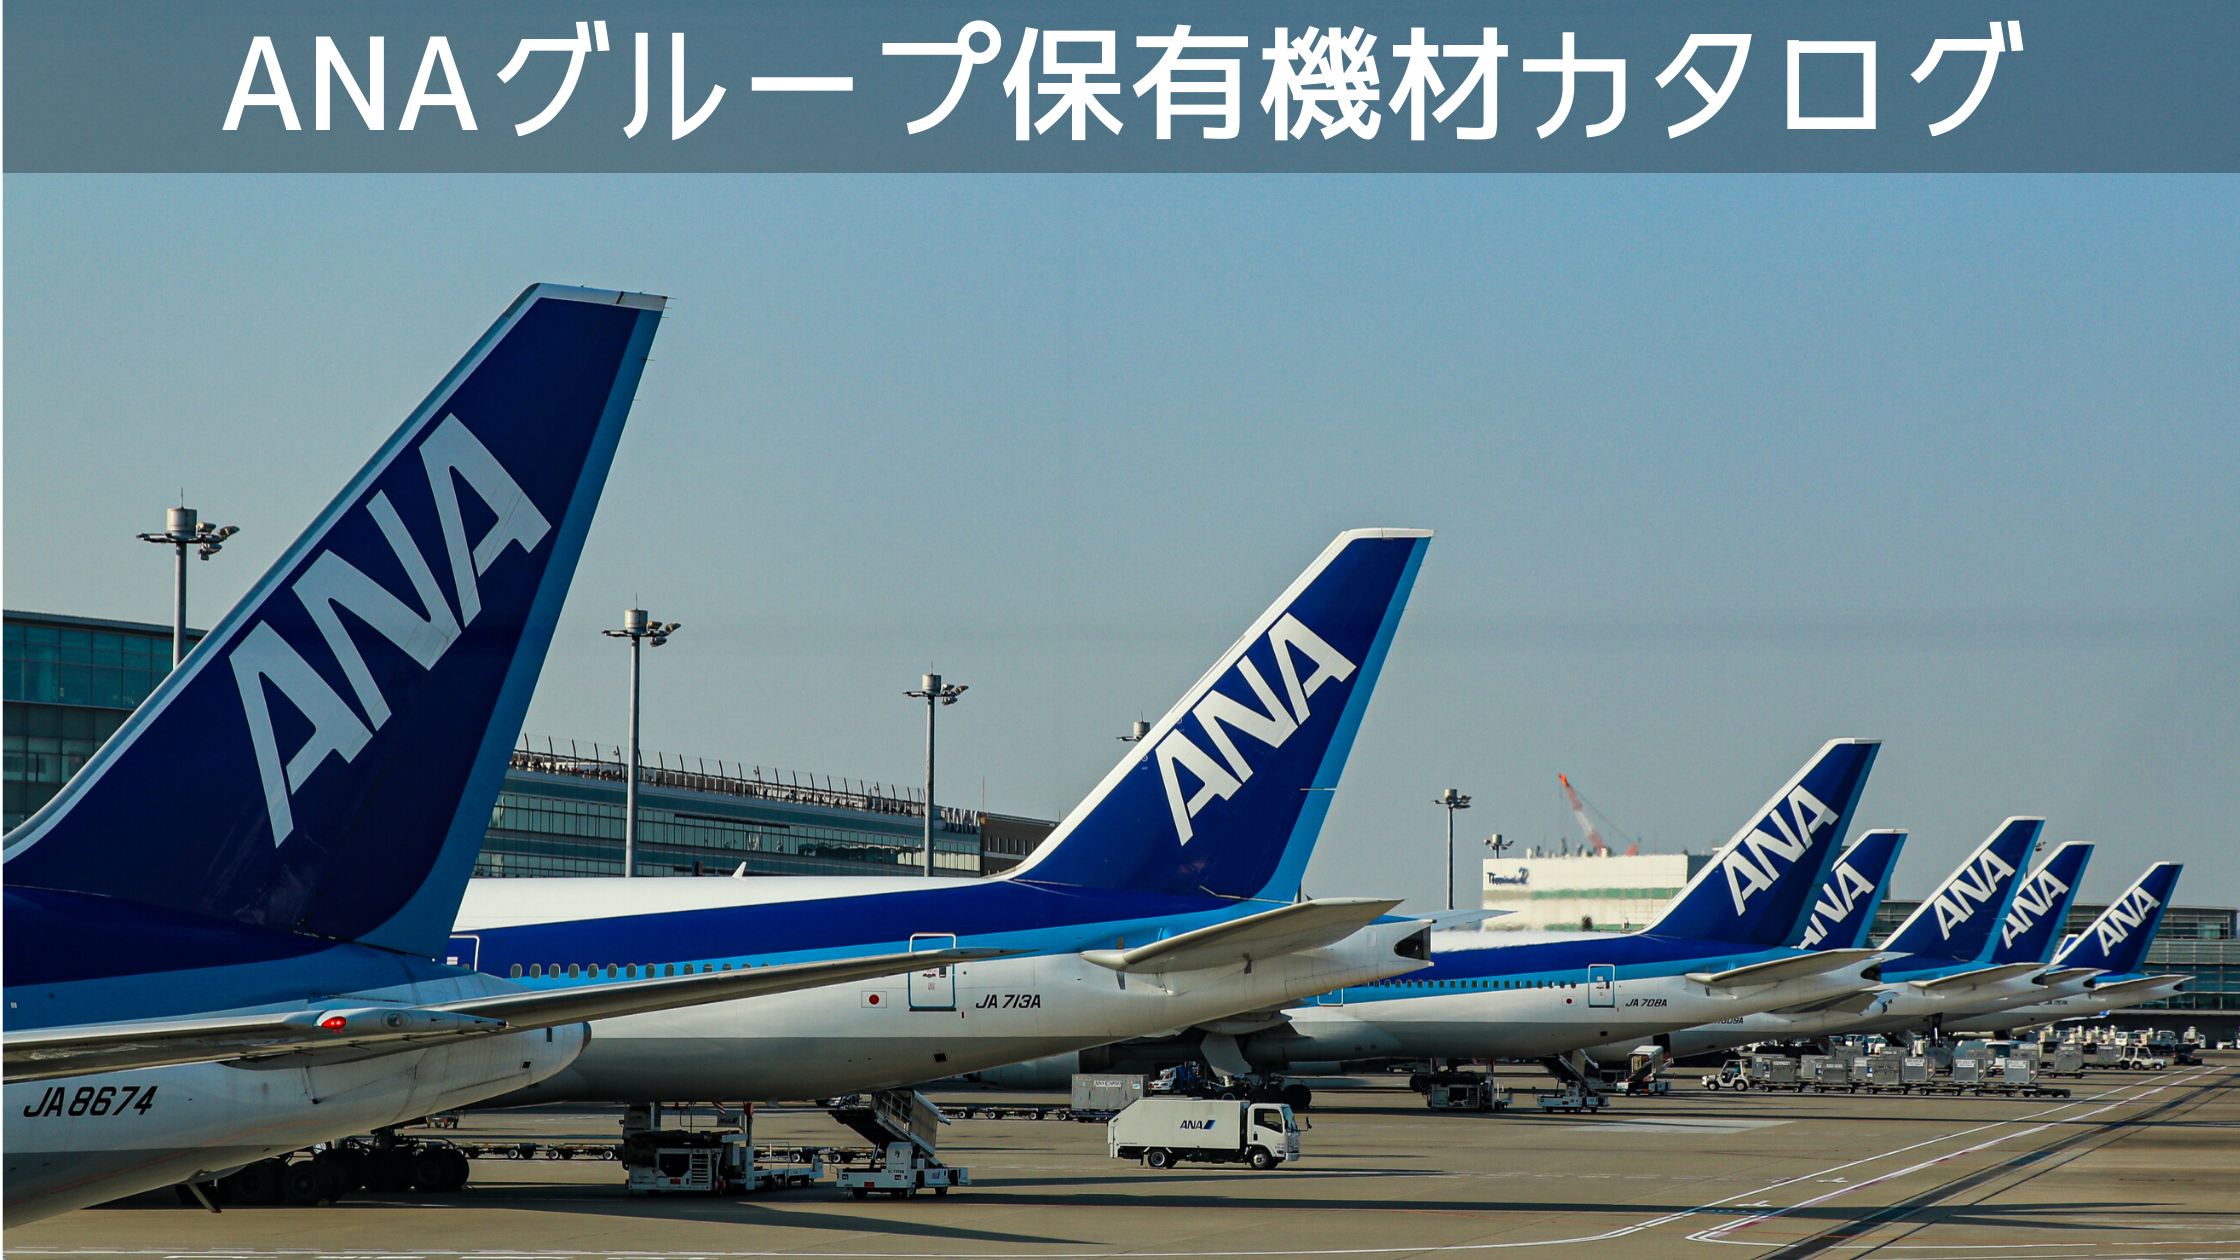 年10月最新版 全18種類 全日本空輸 Ana グループ保有機材カタログ クマフラ